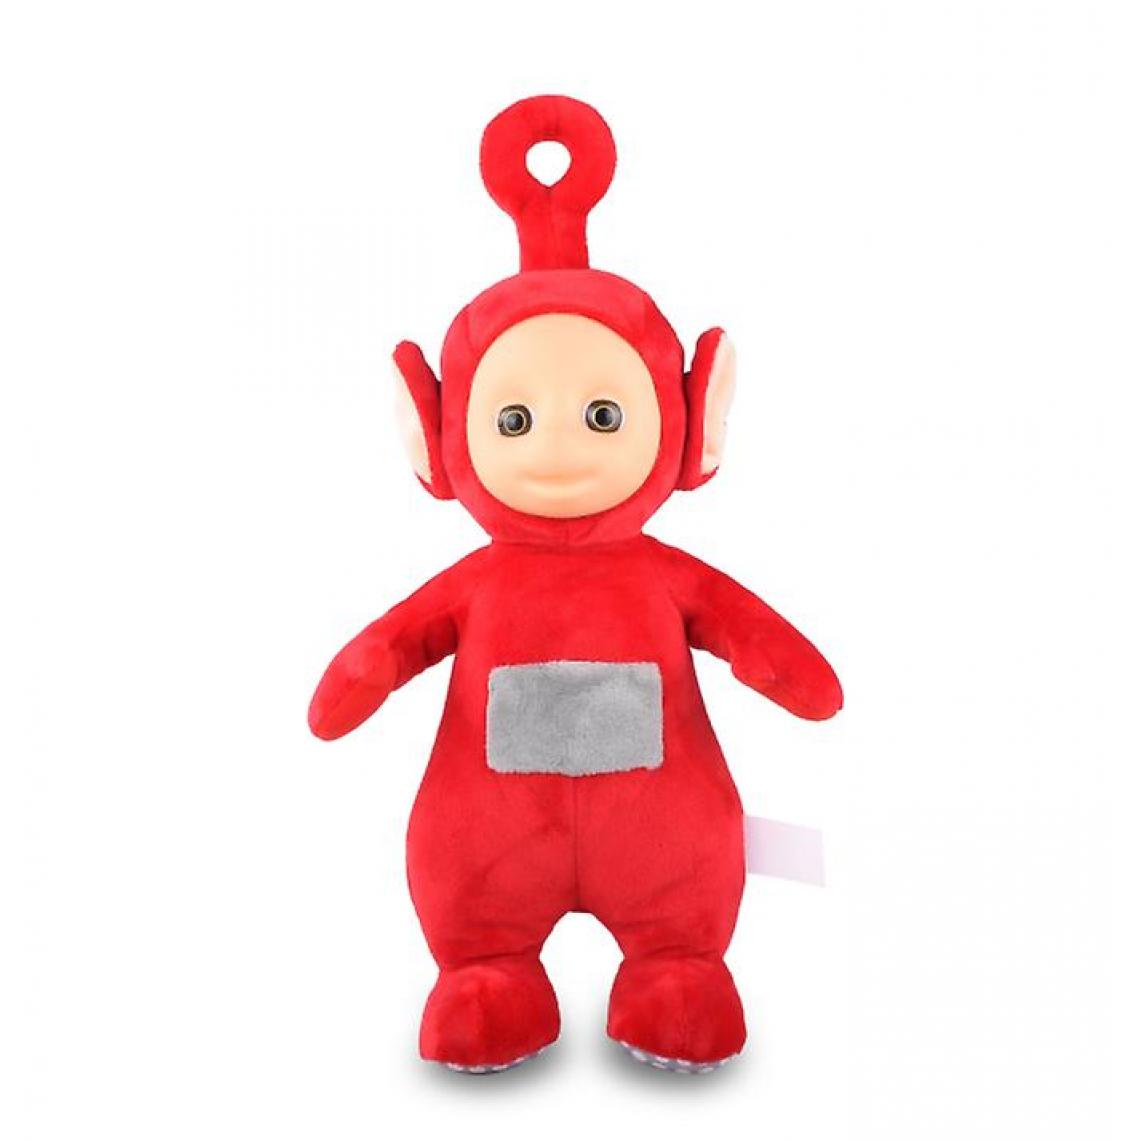 Universal - Poupée en peluche (rouge) de 25 cm, authentique, respirante, garantie, éducation précoce - Animaux